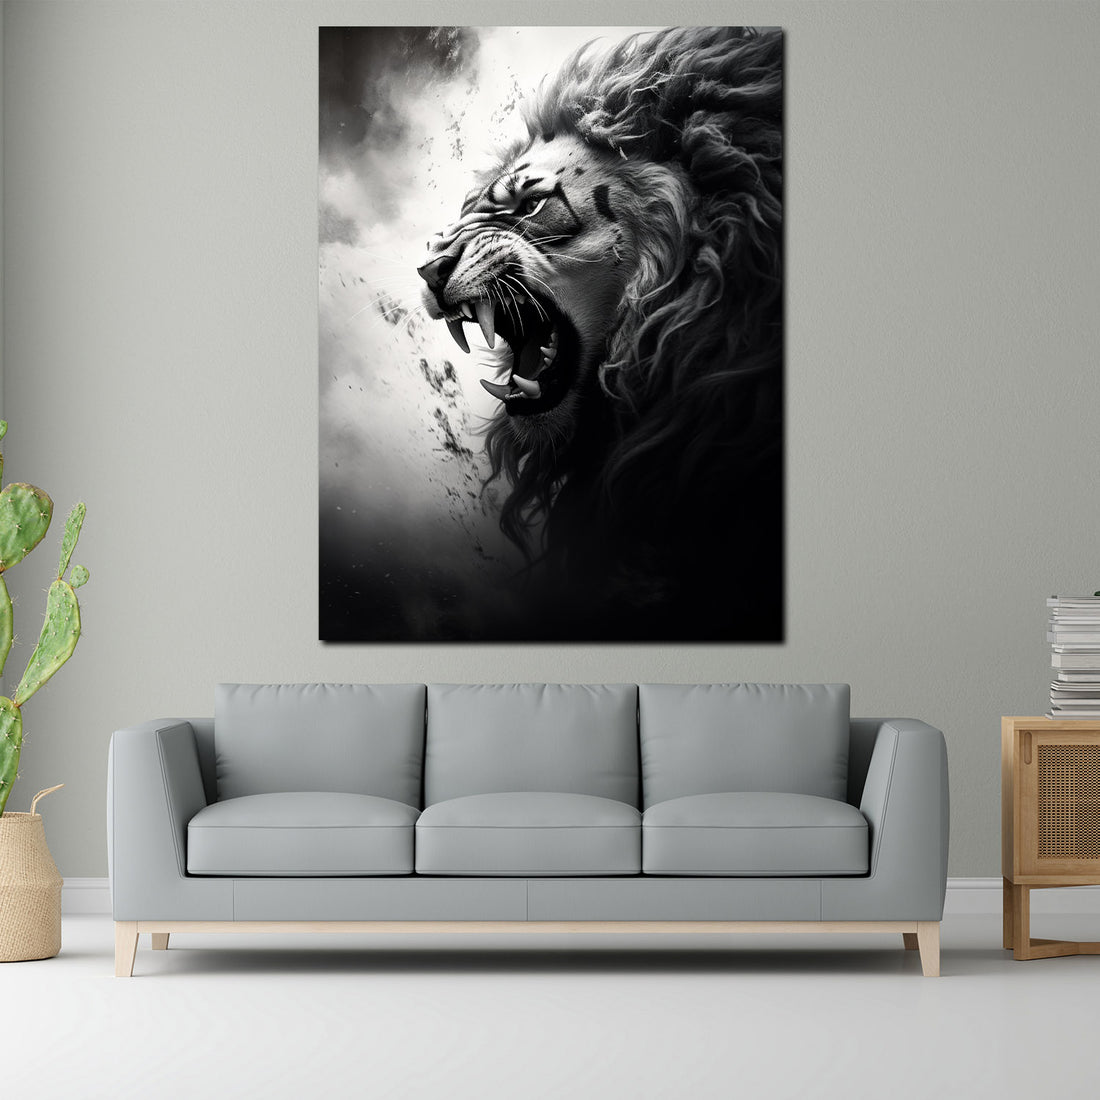 Wandbild Löwe Kopf abstrakt schwarz weis